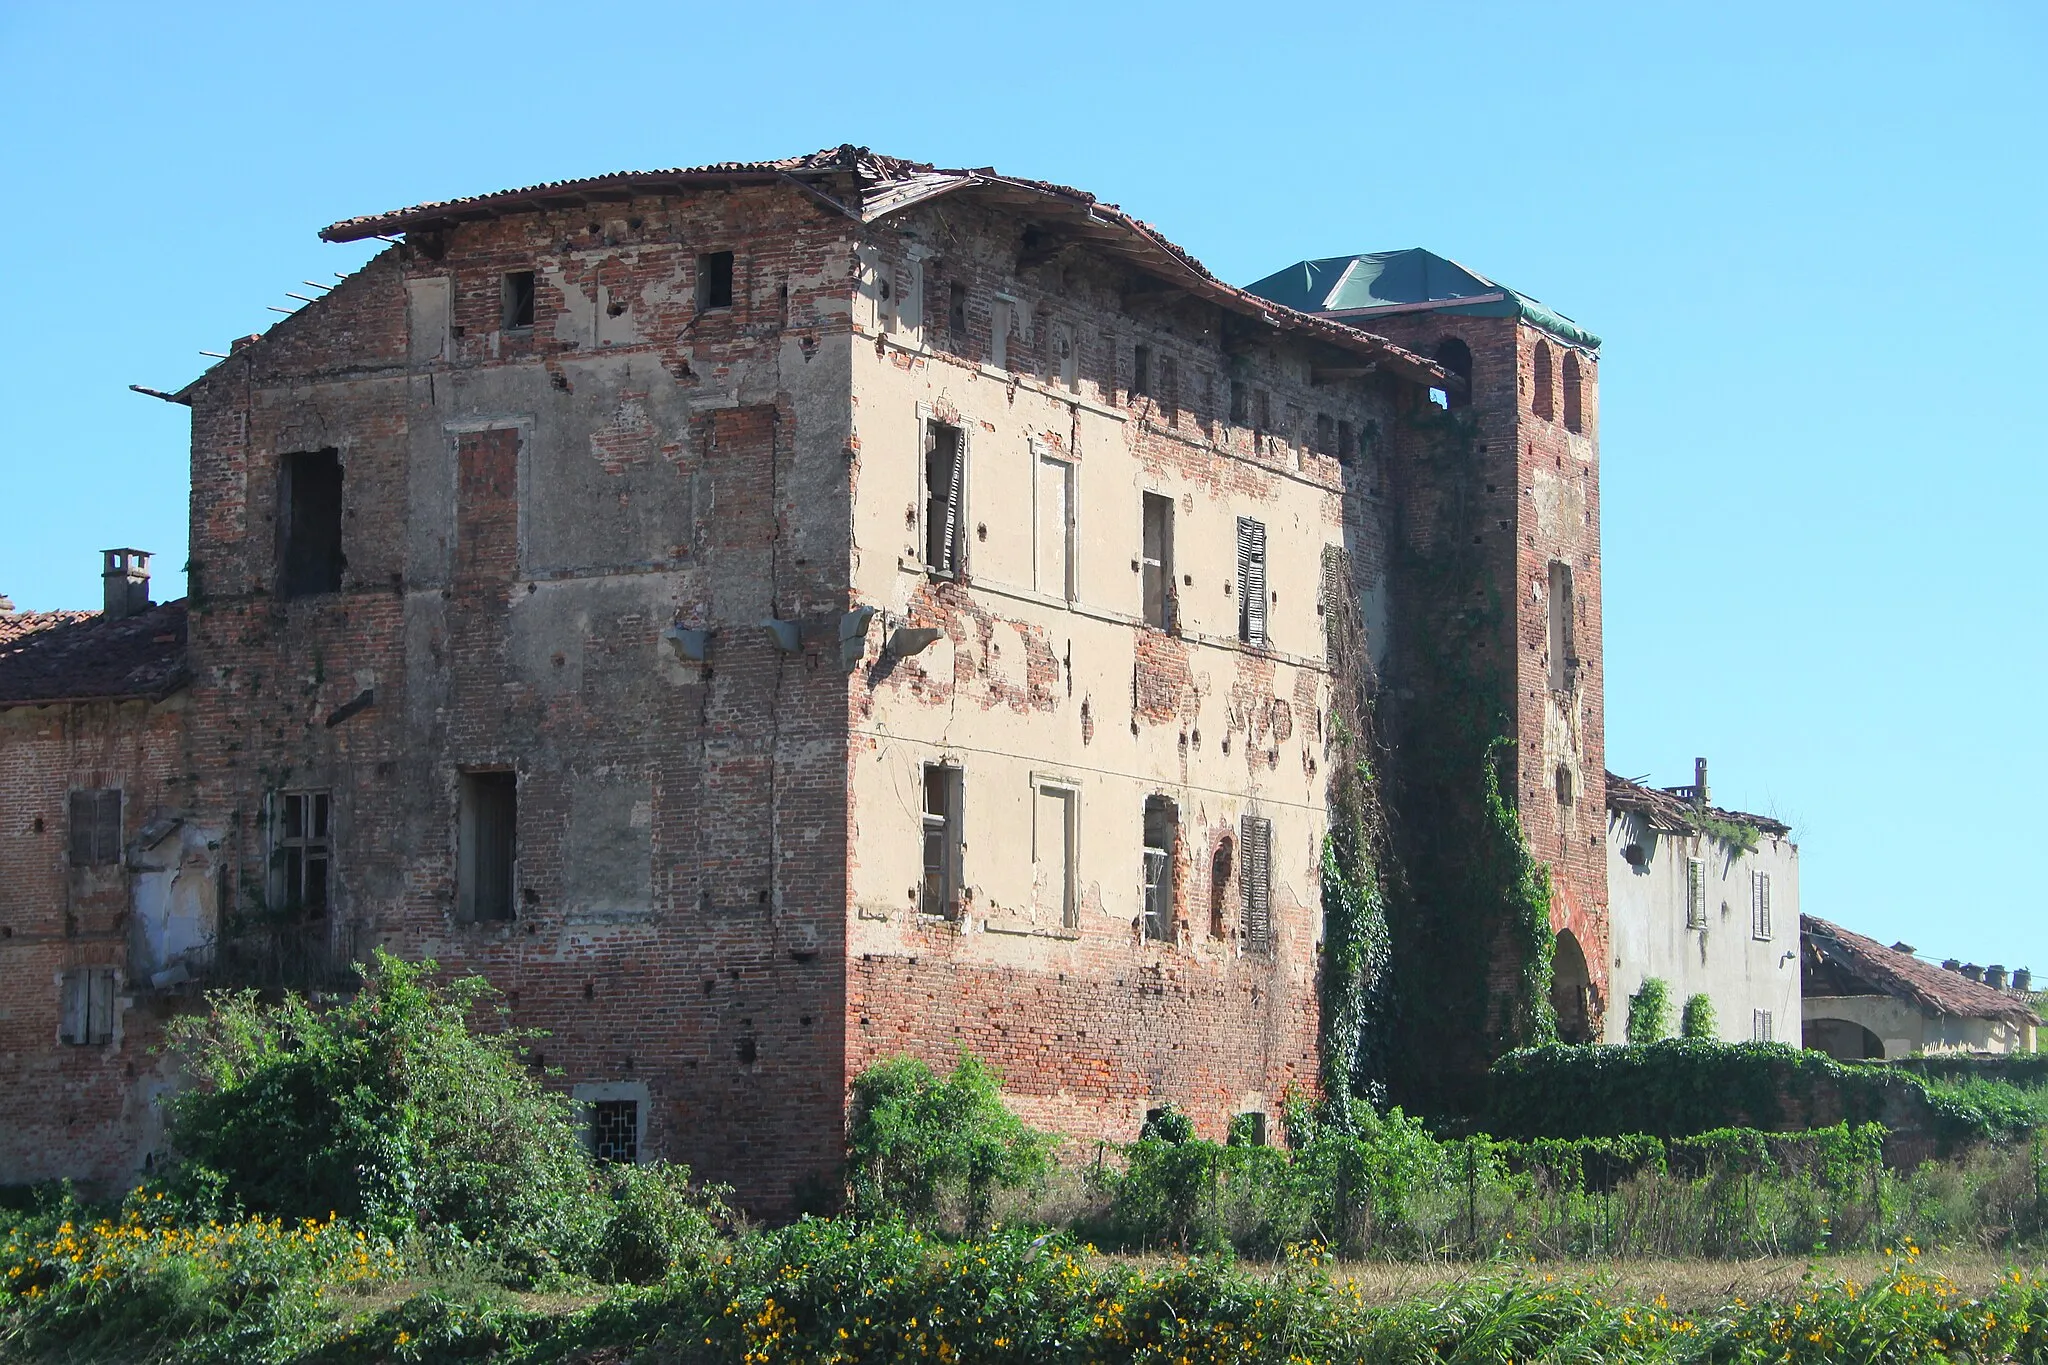 Image de Villanova Monferrato